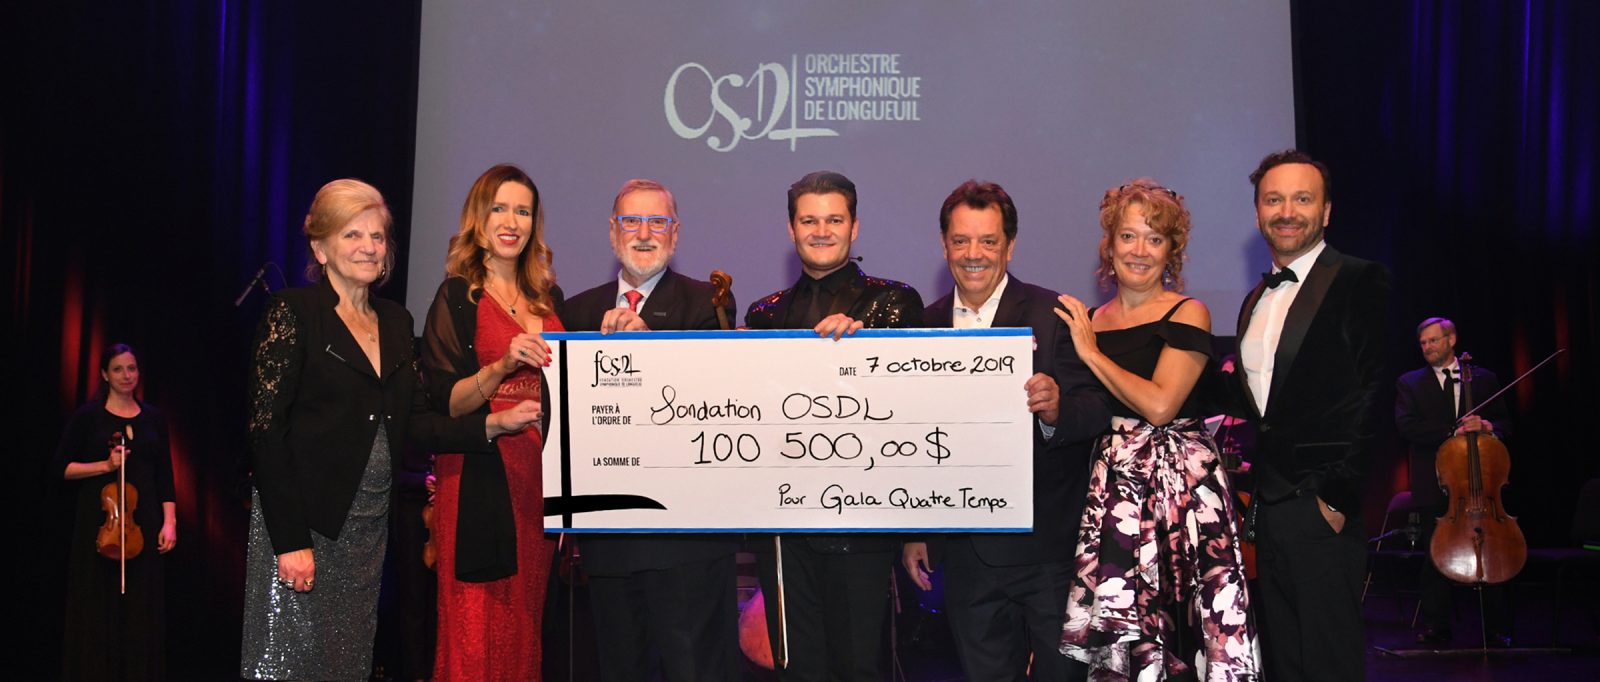 La Fondation Orchestre symphonique de Longueuil recueille 100 500 $ lors du premier gala-bénéfice du chef Alexandre Da Costa